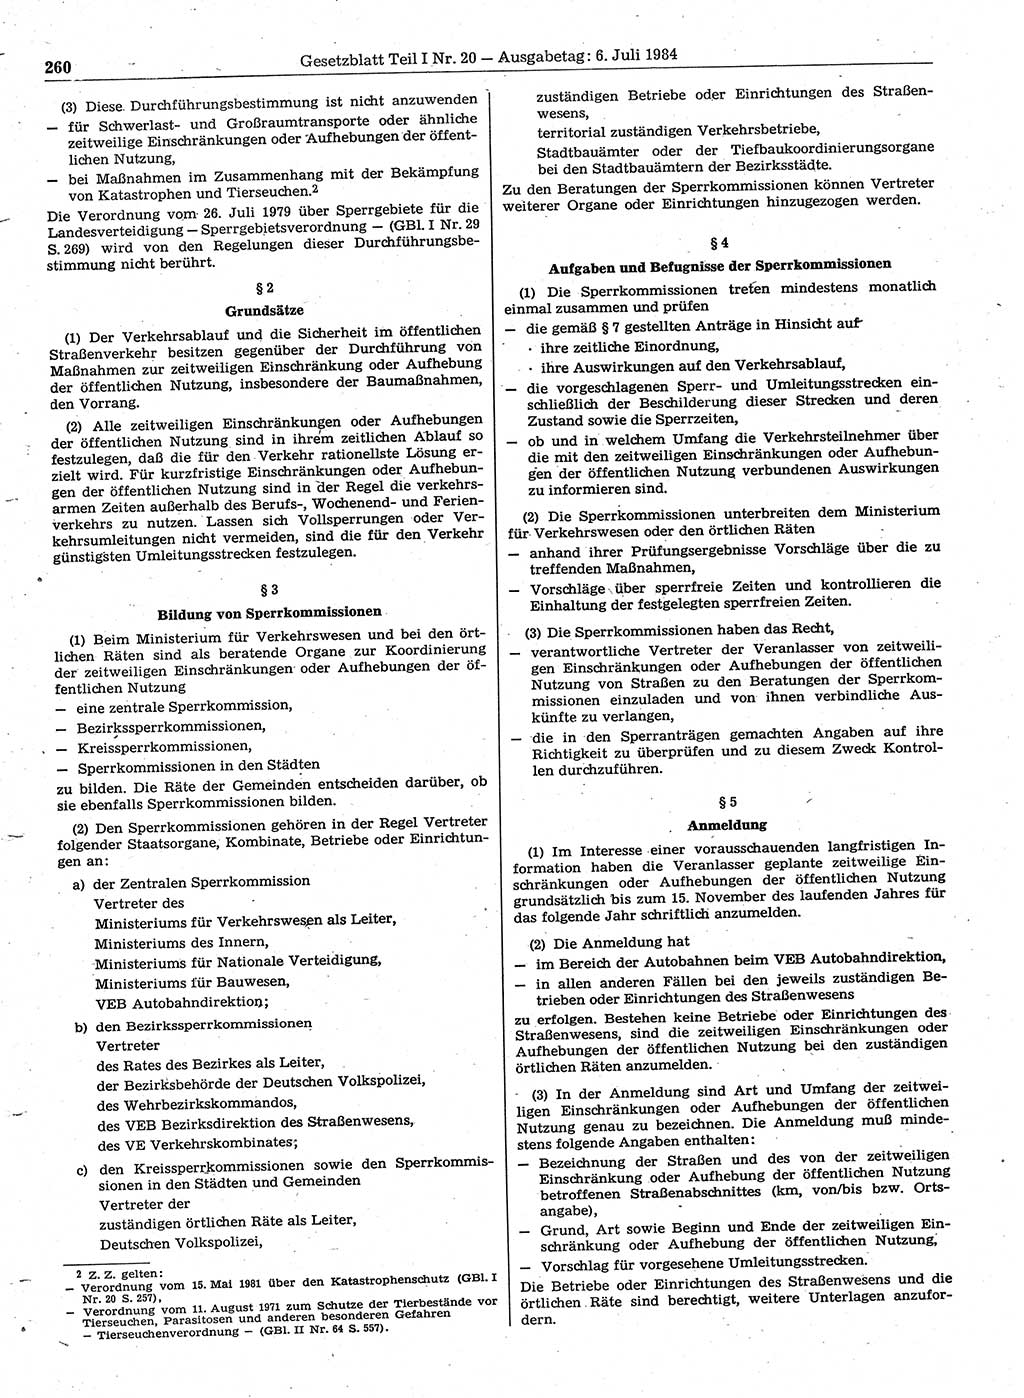 Gesetzblatt (GBl.) der Deutschen Demokratischen Republik (DDR) Teil Ⅰ 1984, Seite 260 (GBl. DDR Ⅰ 1984, S. 260)